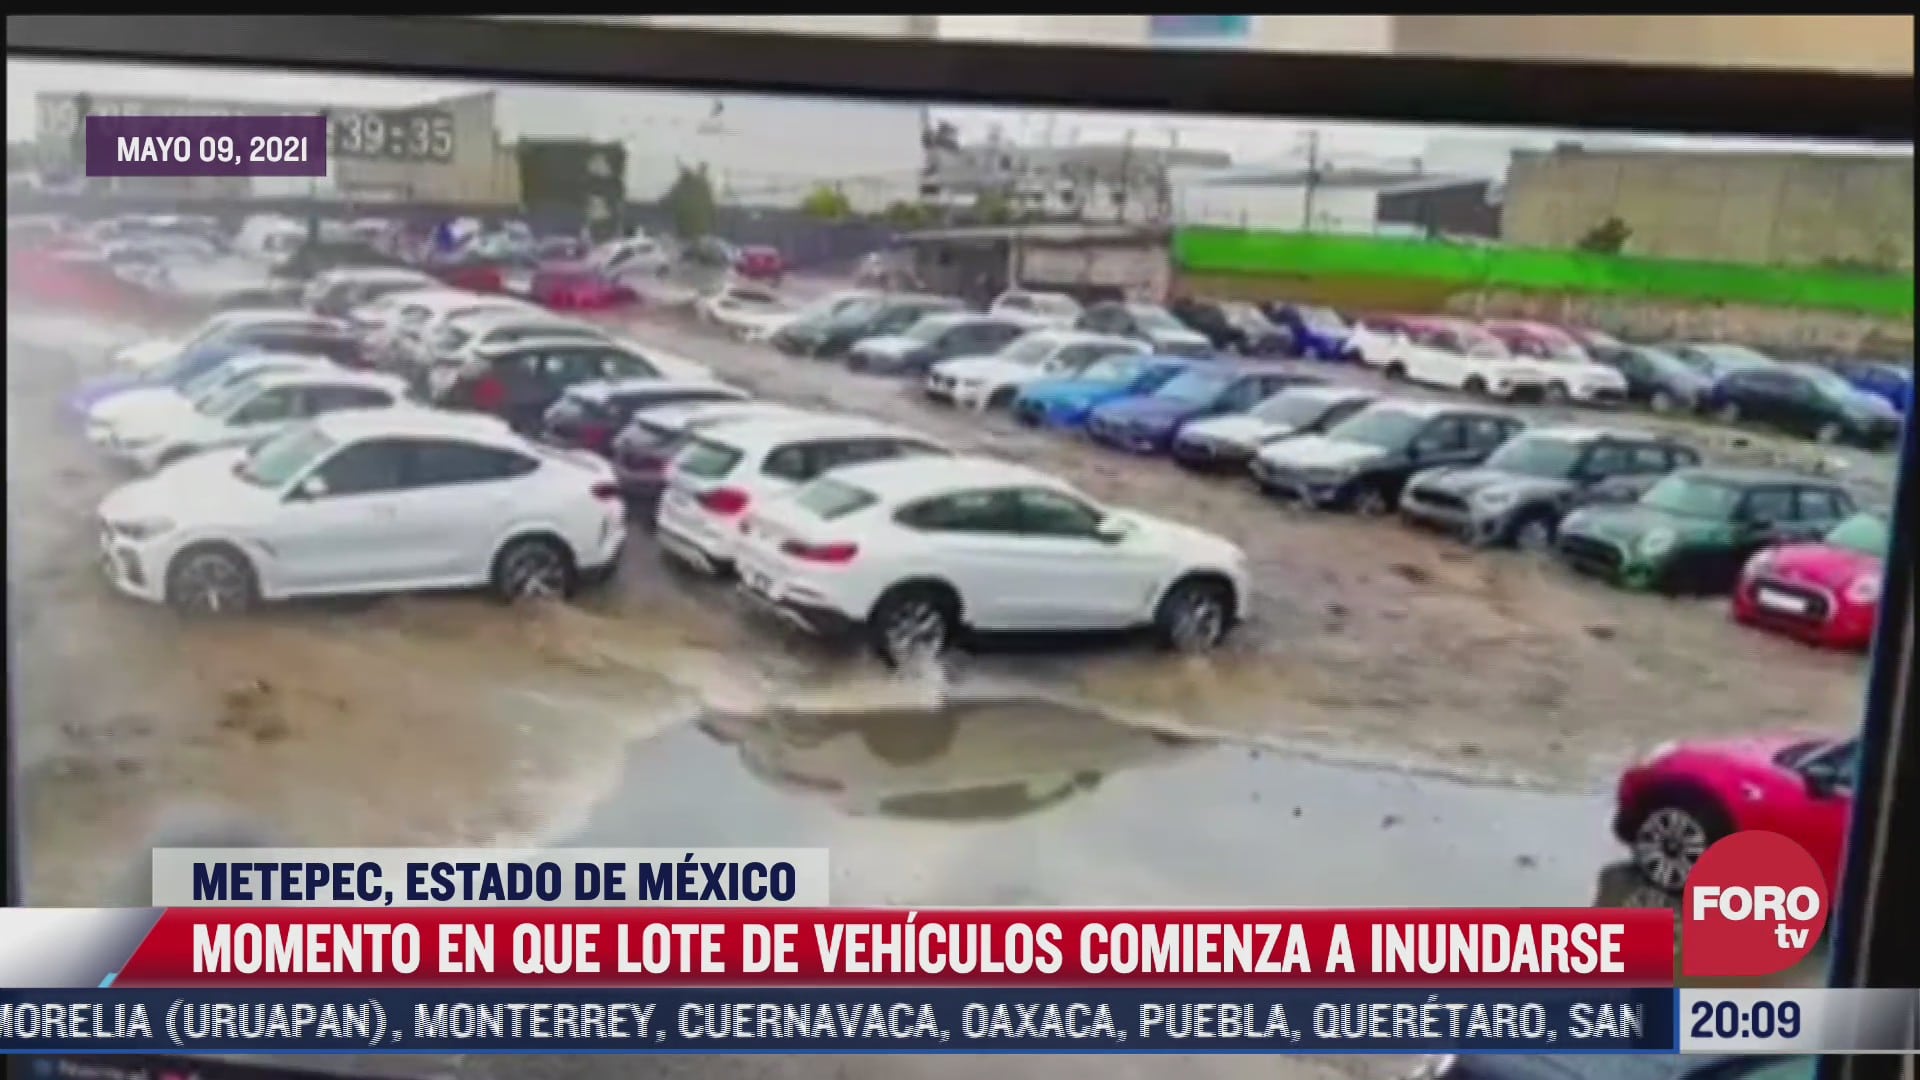 Video: Momento inundación lote a de autos en Metepec